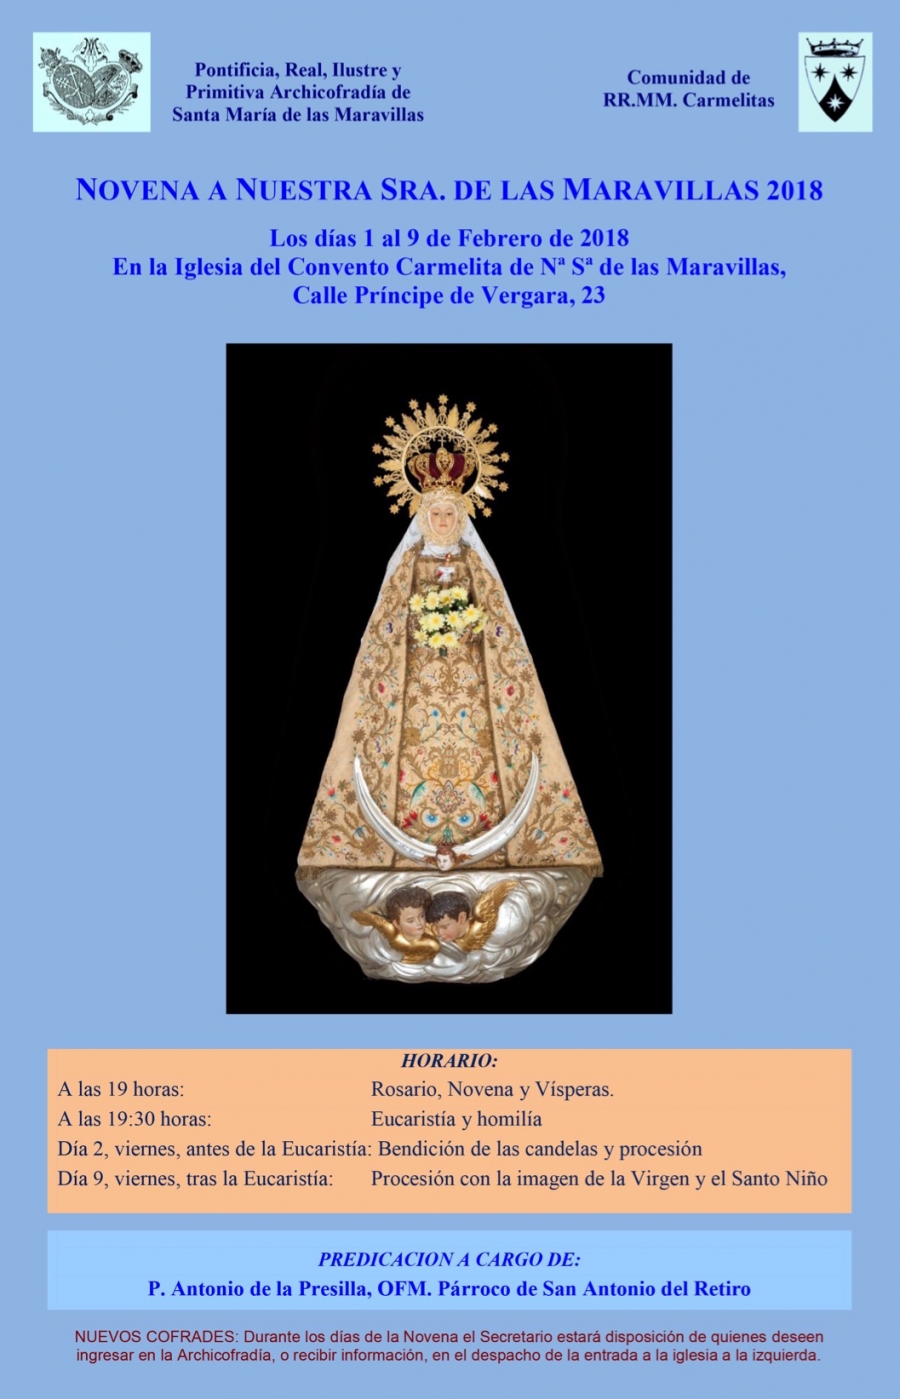 Las carmelitas de Príncipe de Vergara programan una novena en honor a Nuestra Señora de las Maravillas